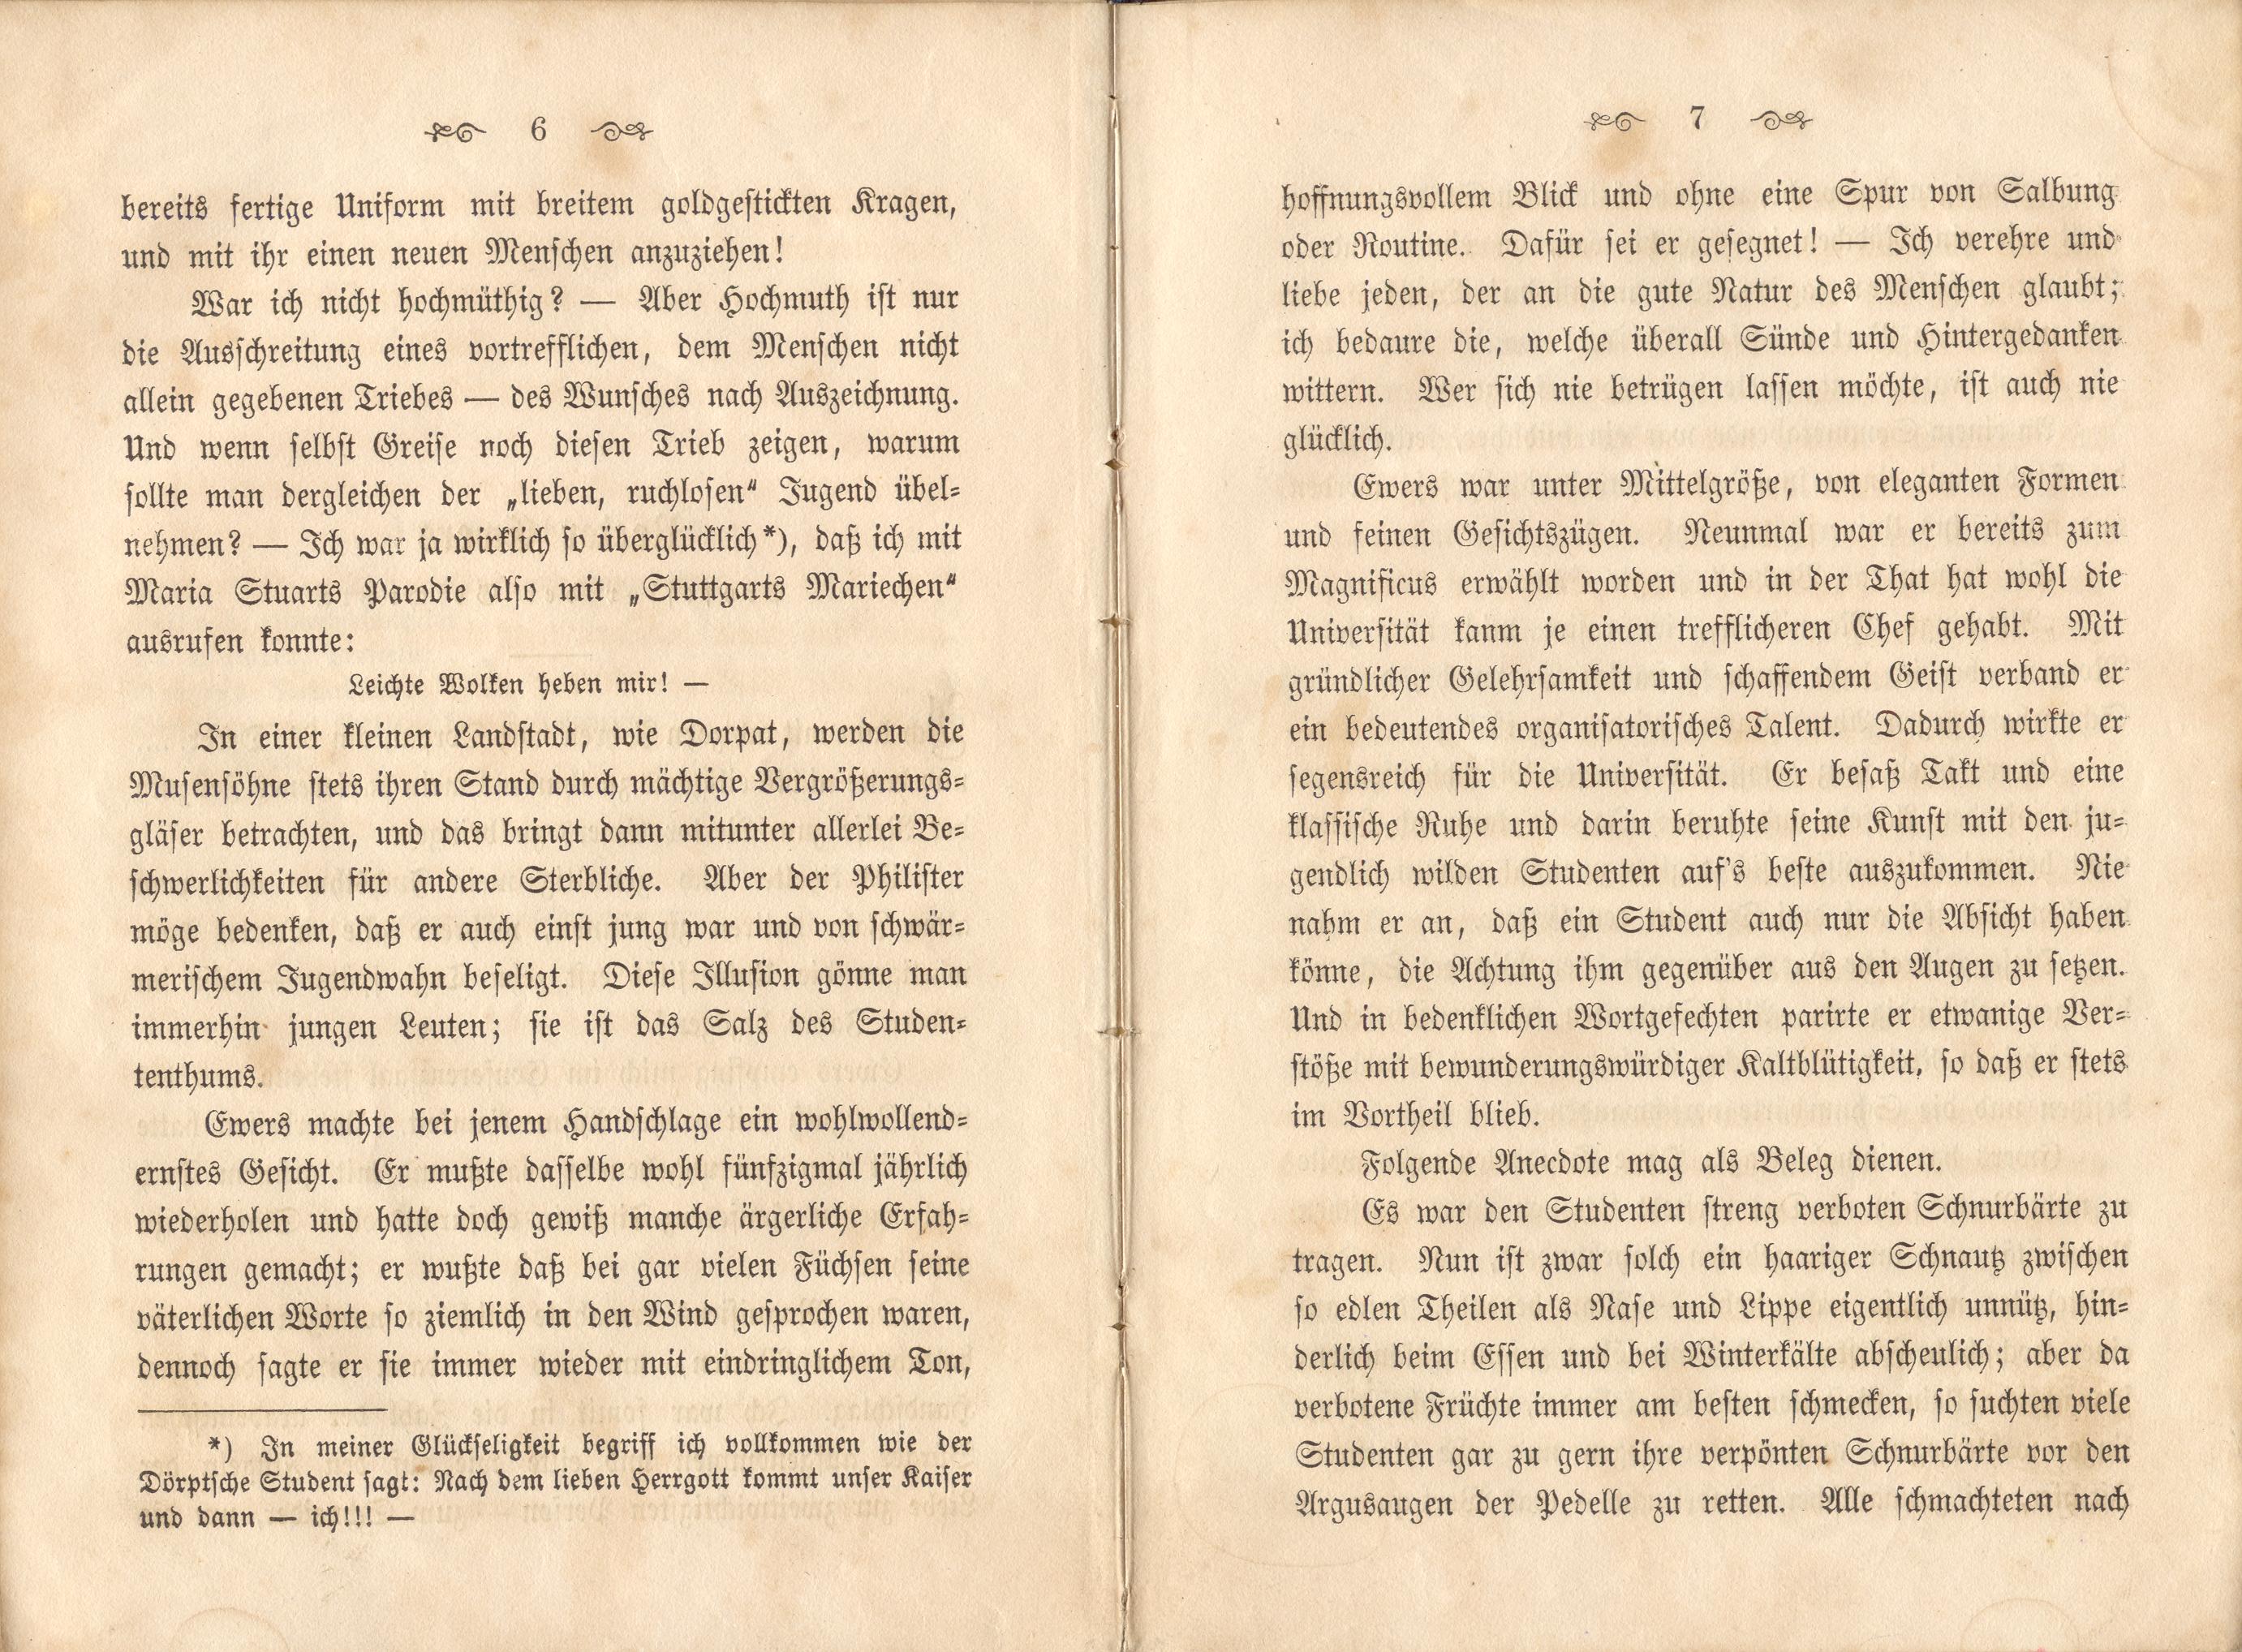 Dorpats Grössen und Typen (1868) | 6. (6-7) Haupttext